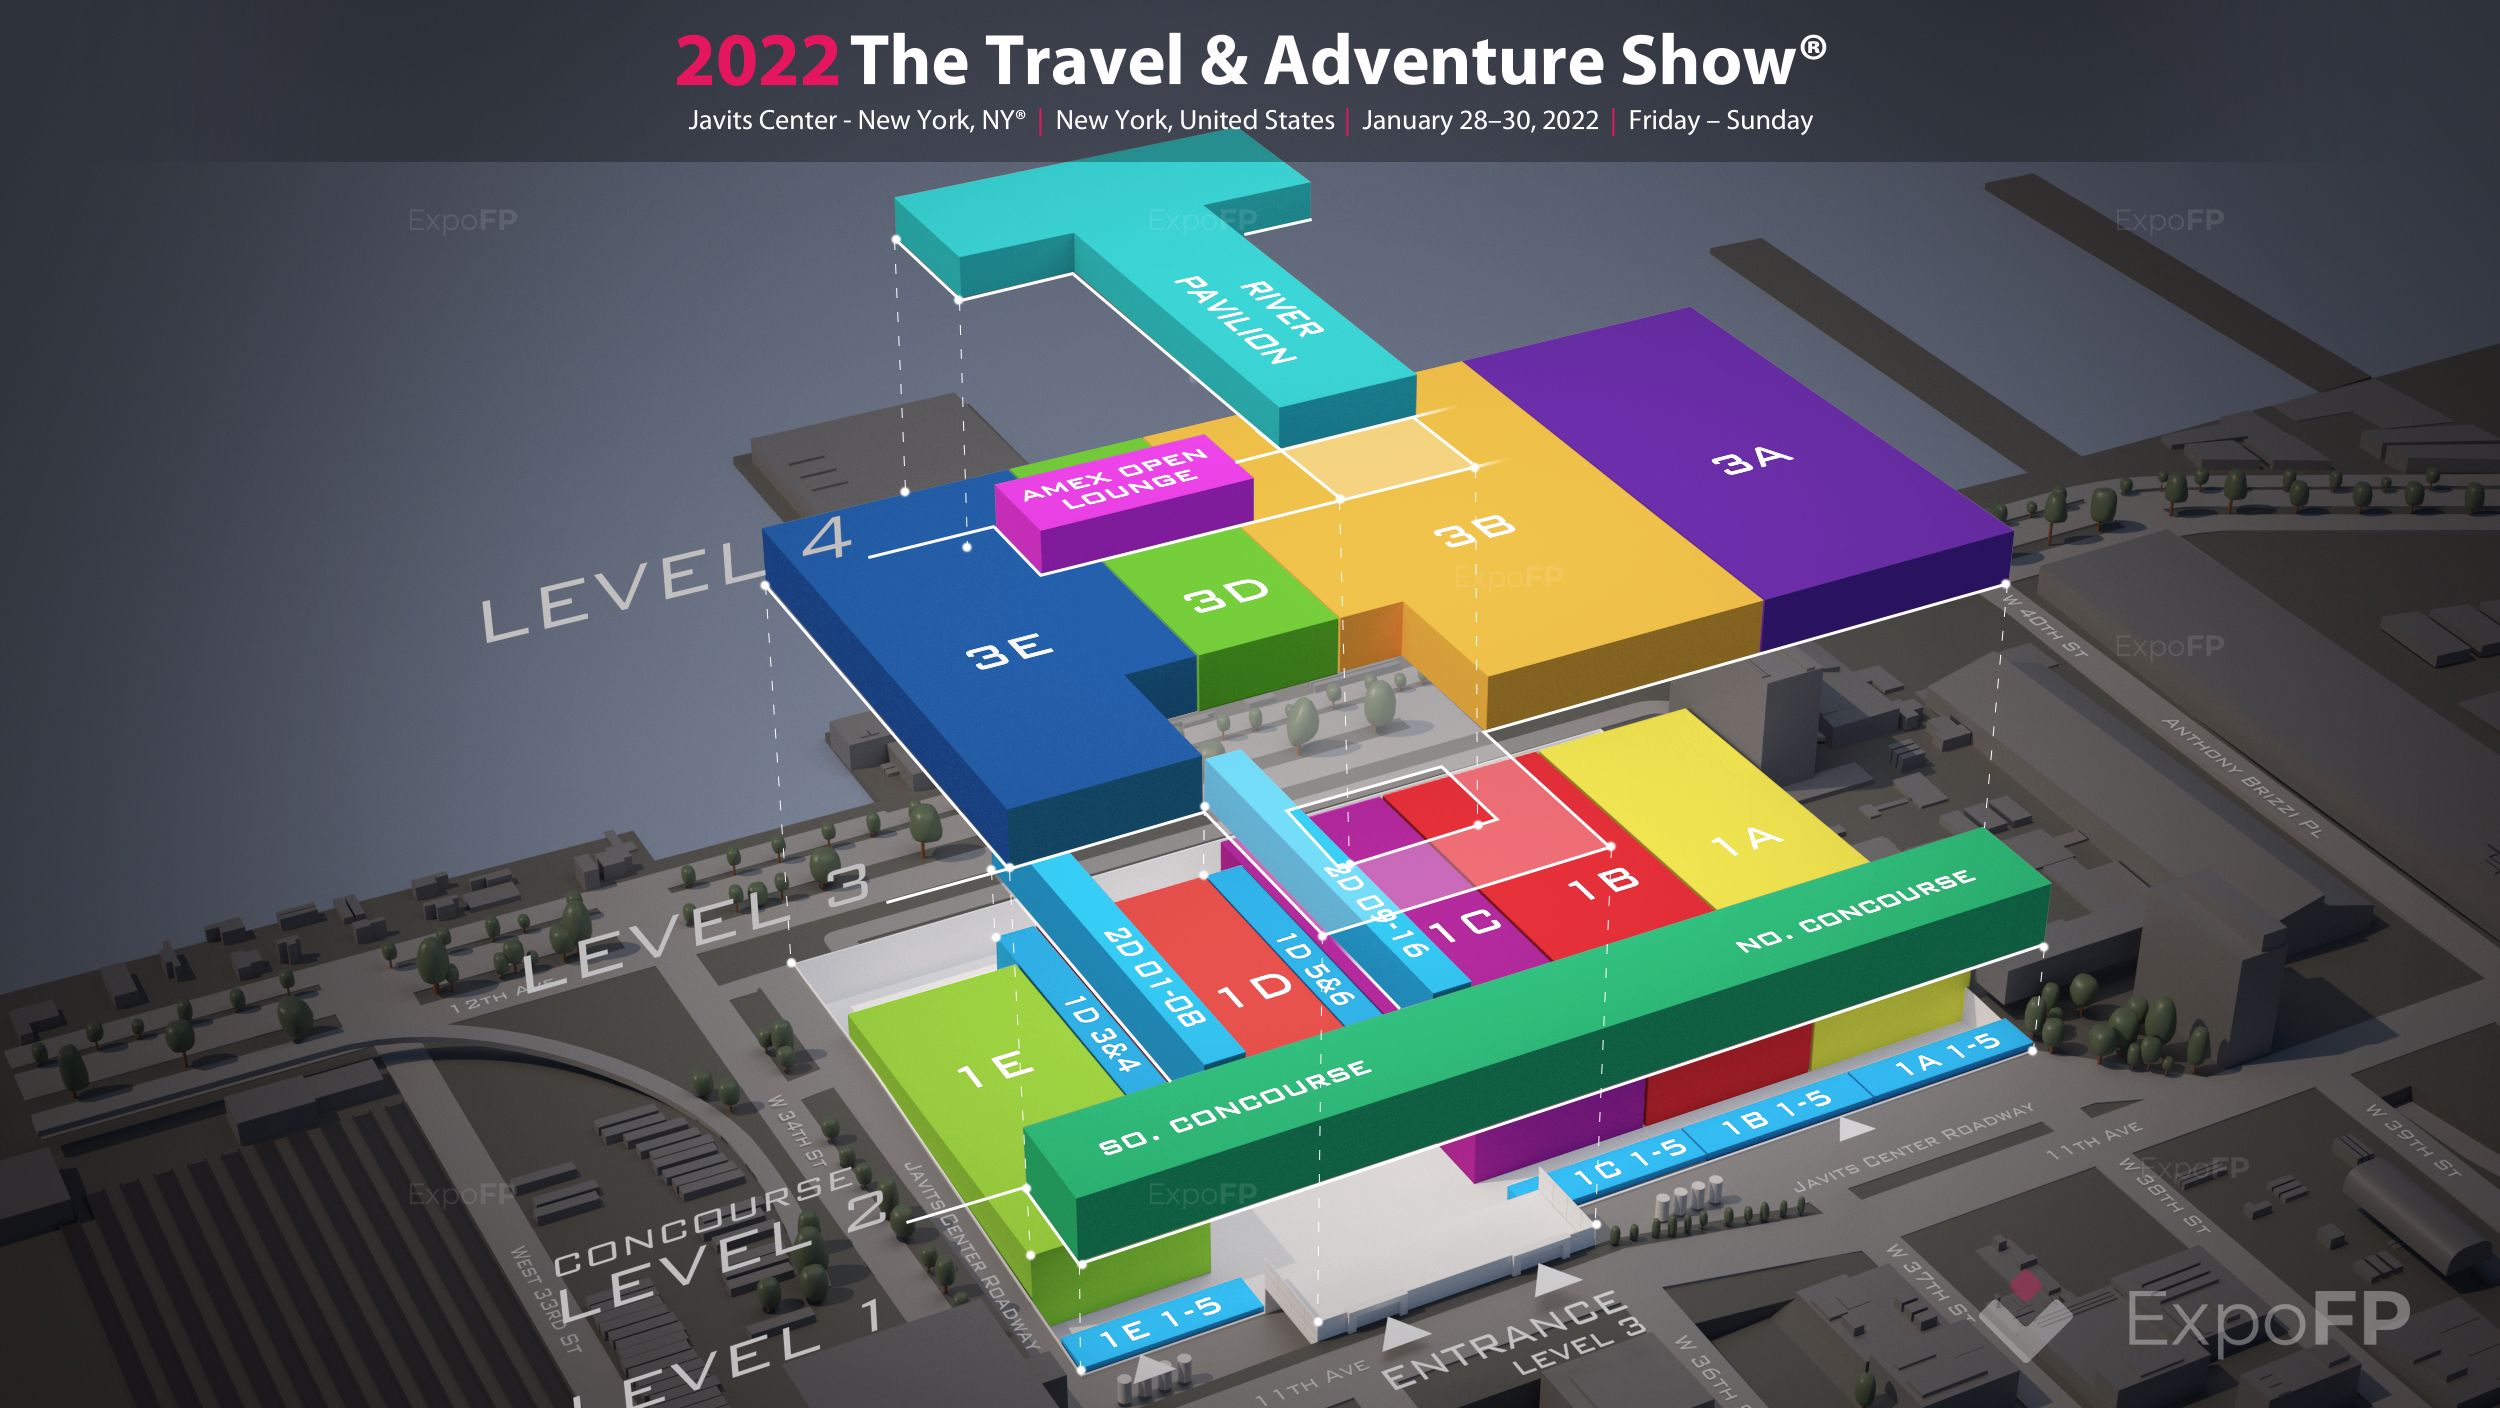 The Travel & Adventure Show 2022 3D floor plan